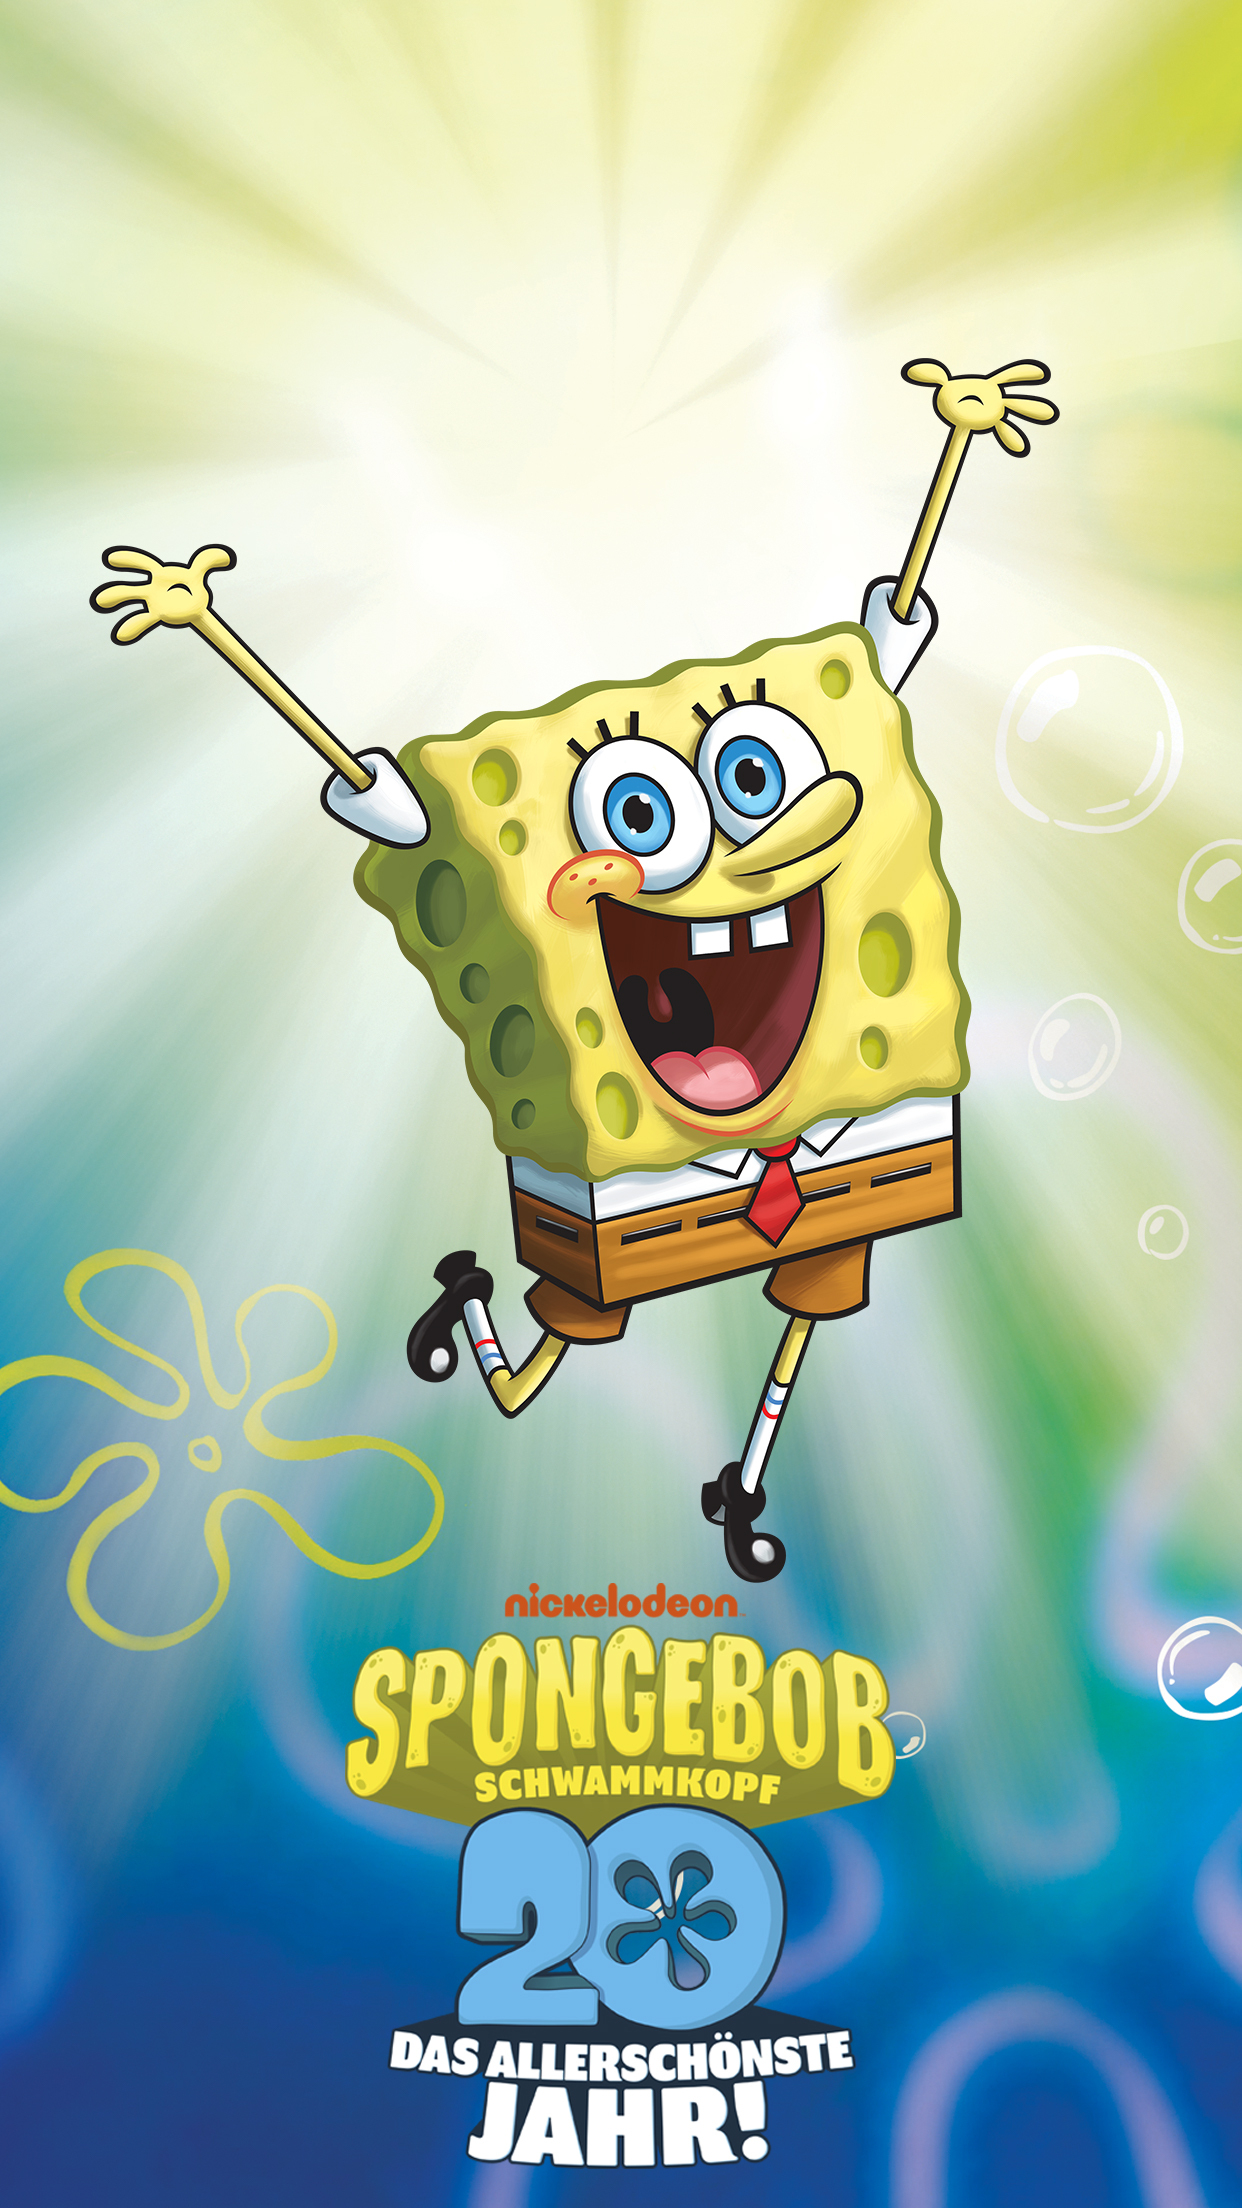 Spiel&amp;spaß – Spongebobs Große Geburtstags-Sause mit Spongebob Schwammkopf Spiele Kostenlos